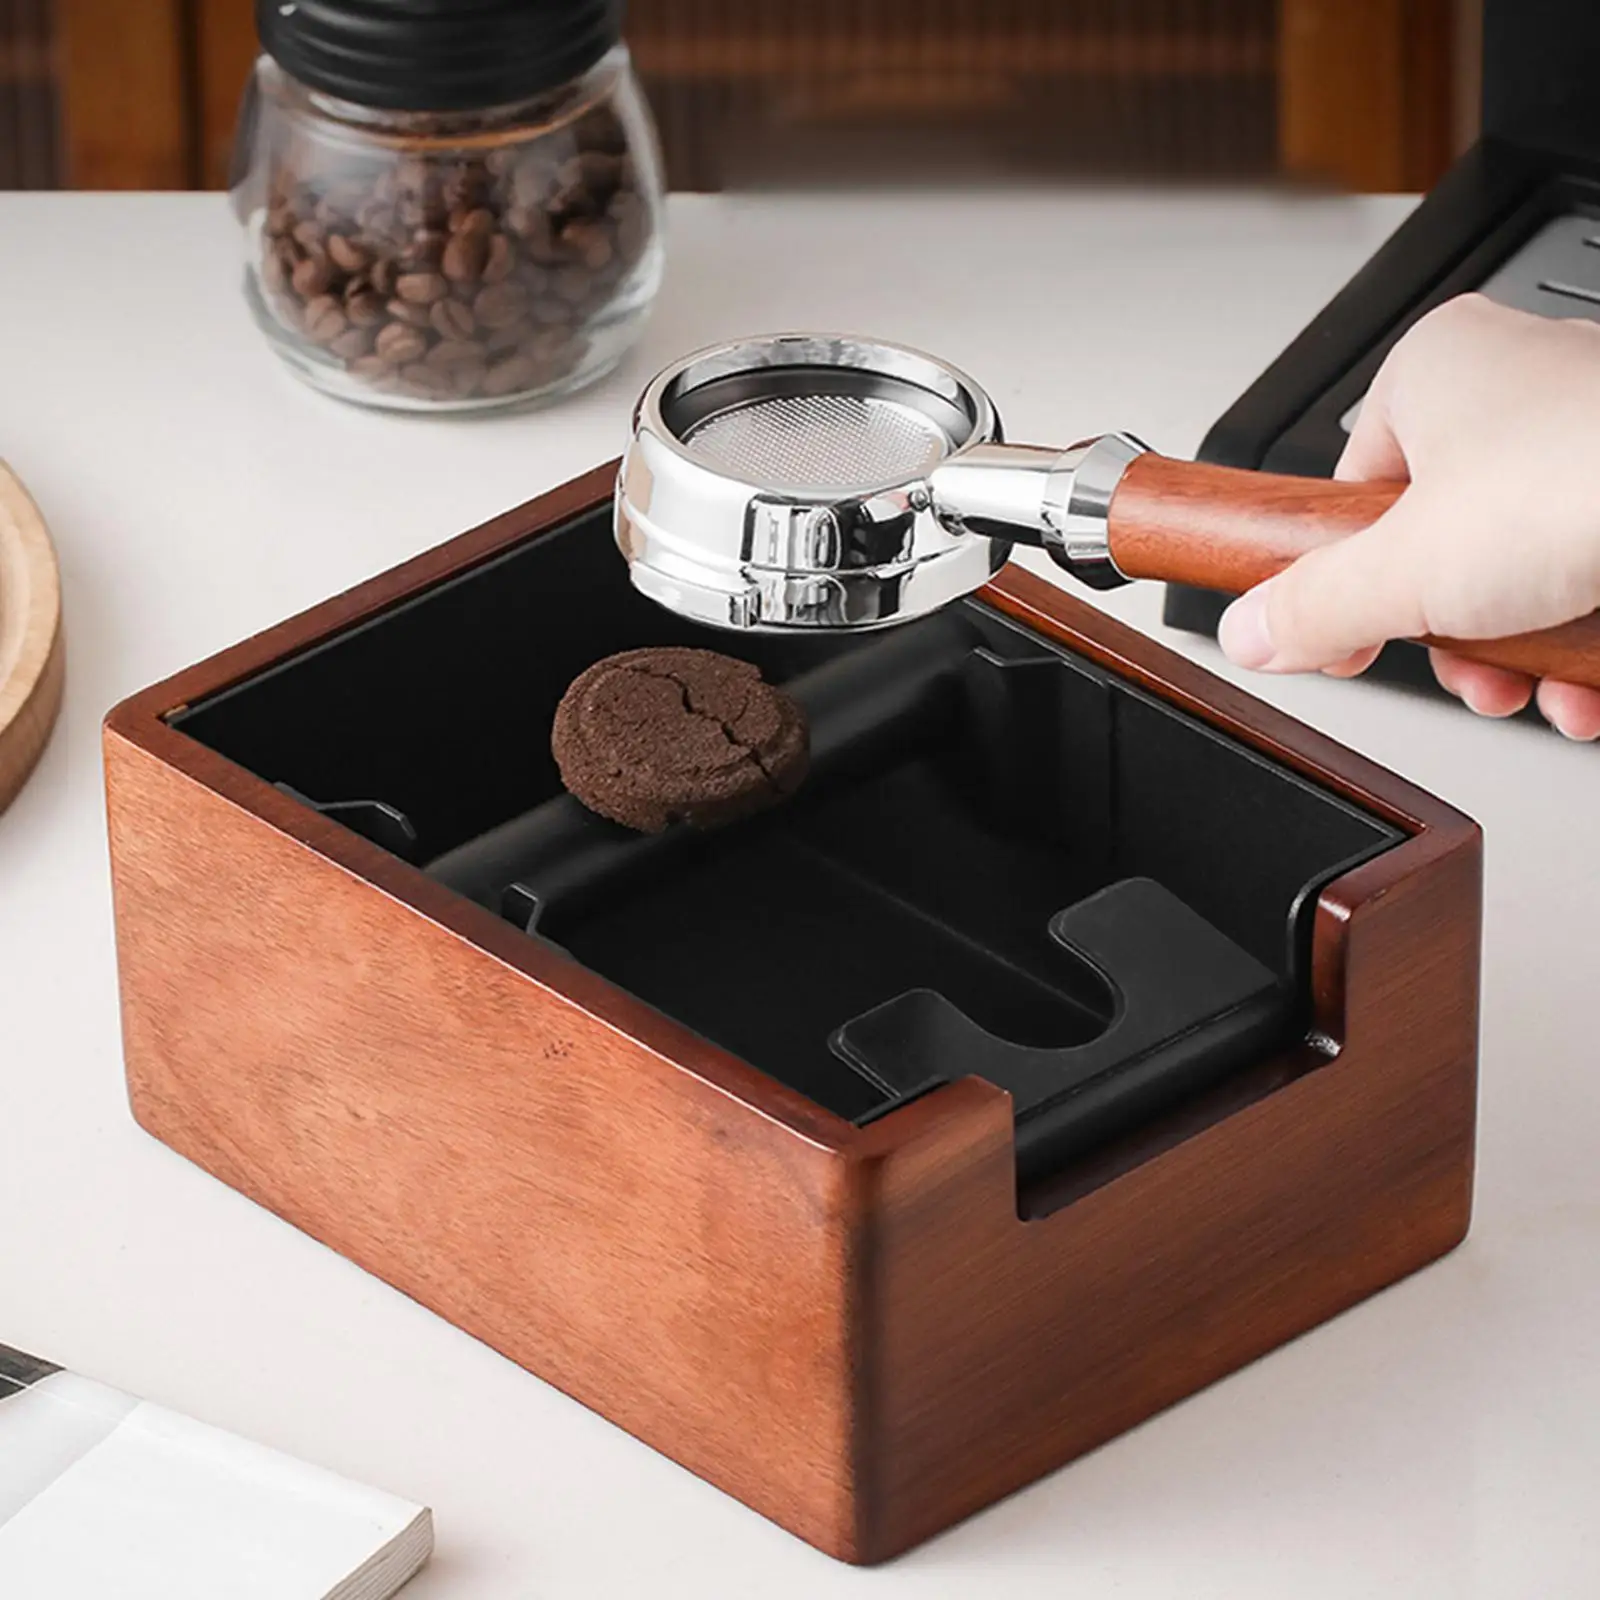 Wooden Coffee Residue Box Non Slip Base Residue Basket 1.5L Espresso Dump Bin for Espresso Machine Accessories Home